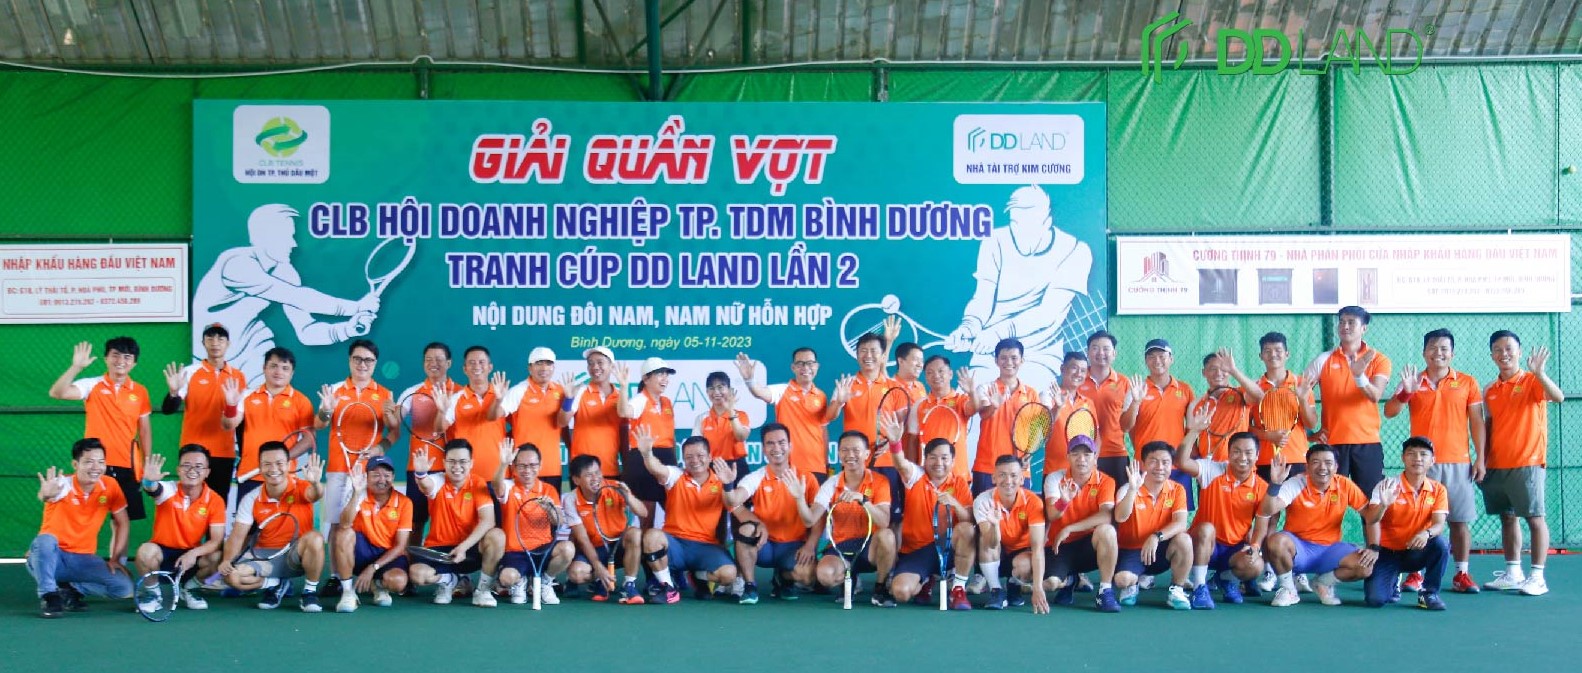 DD LAND giành chiến thắng tại Giải quần vợt CLB Hội doanh nghiệp TP. Thủ Dầu Một